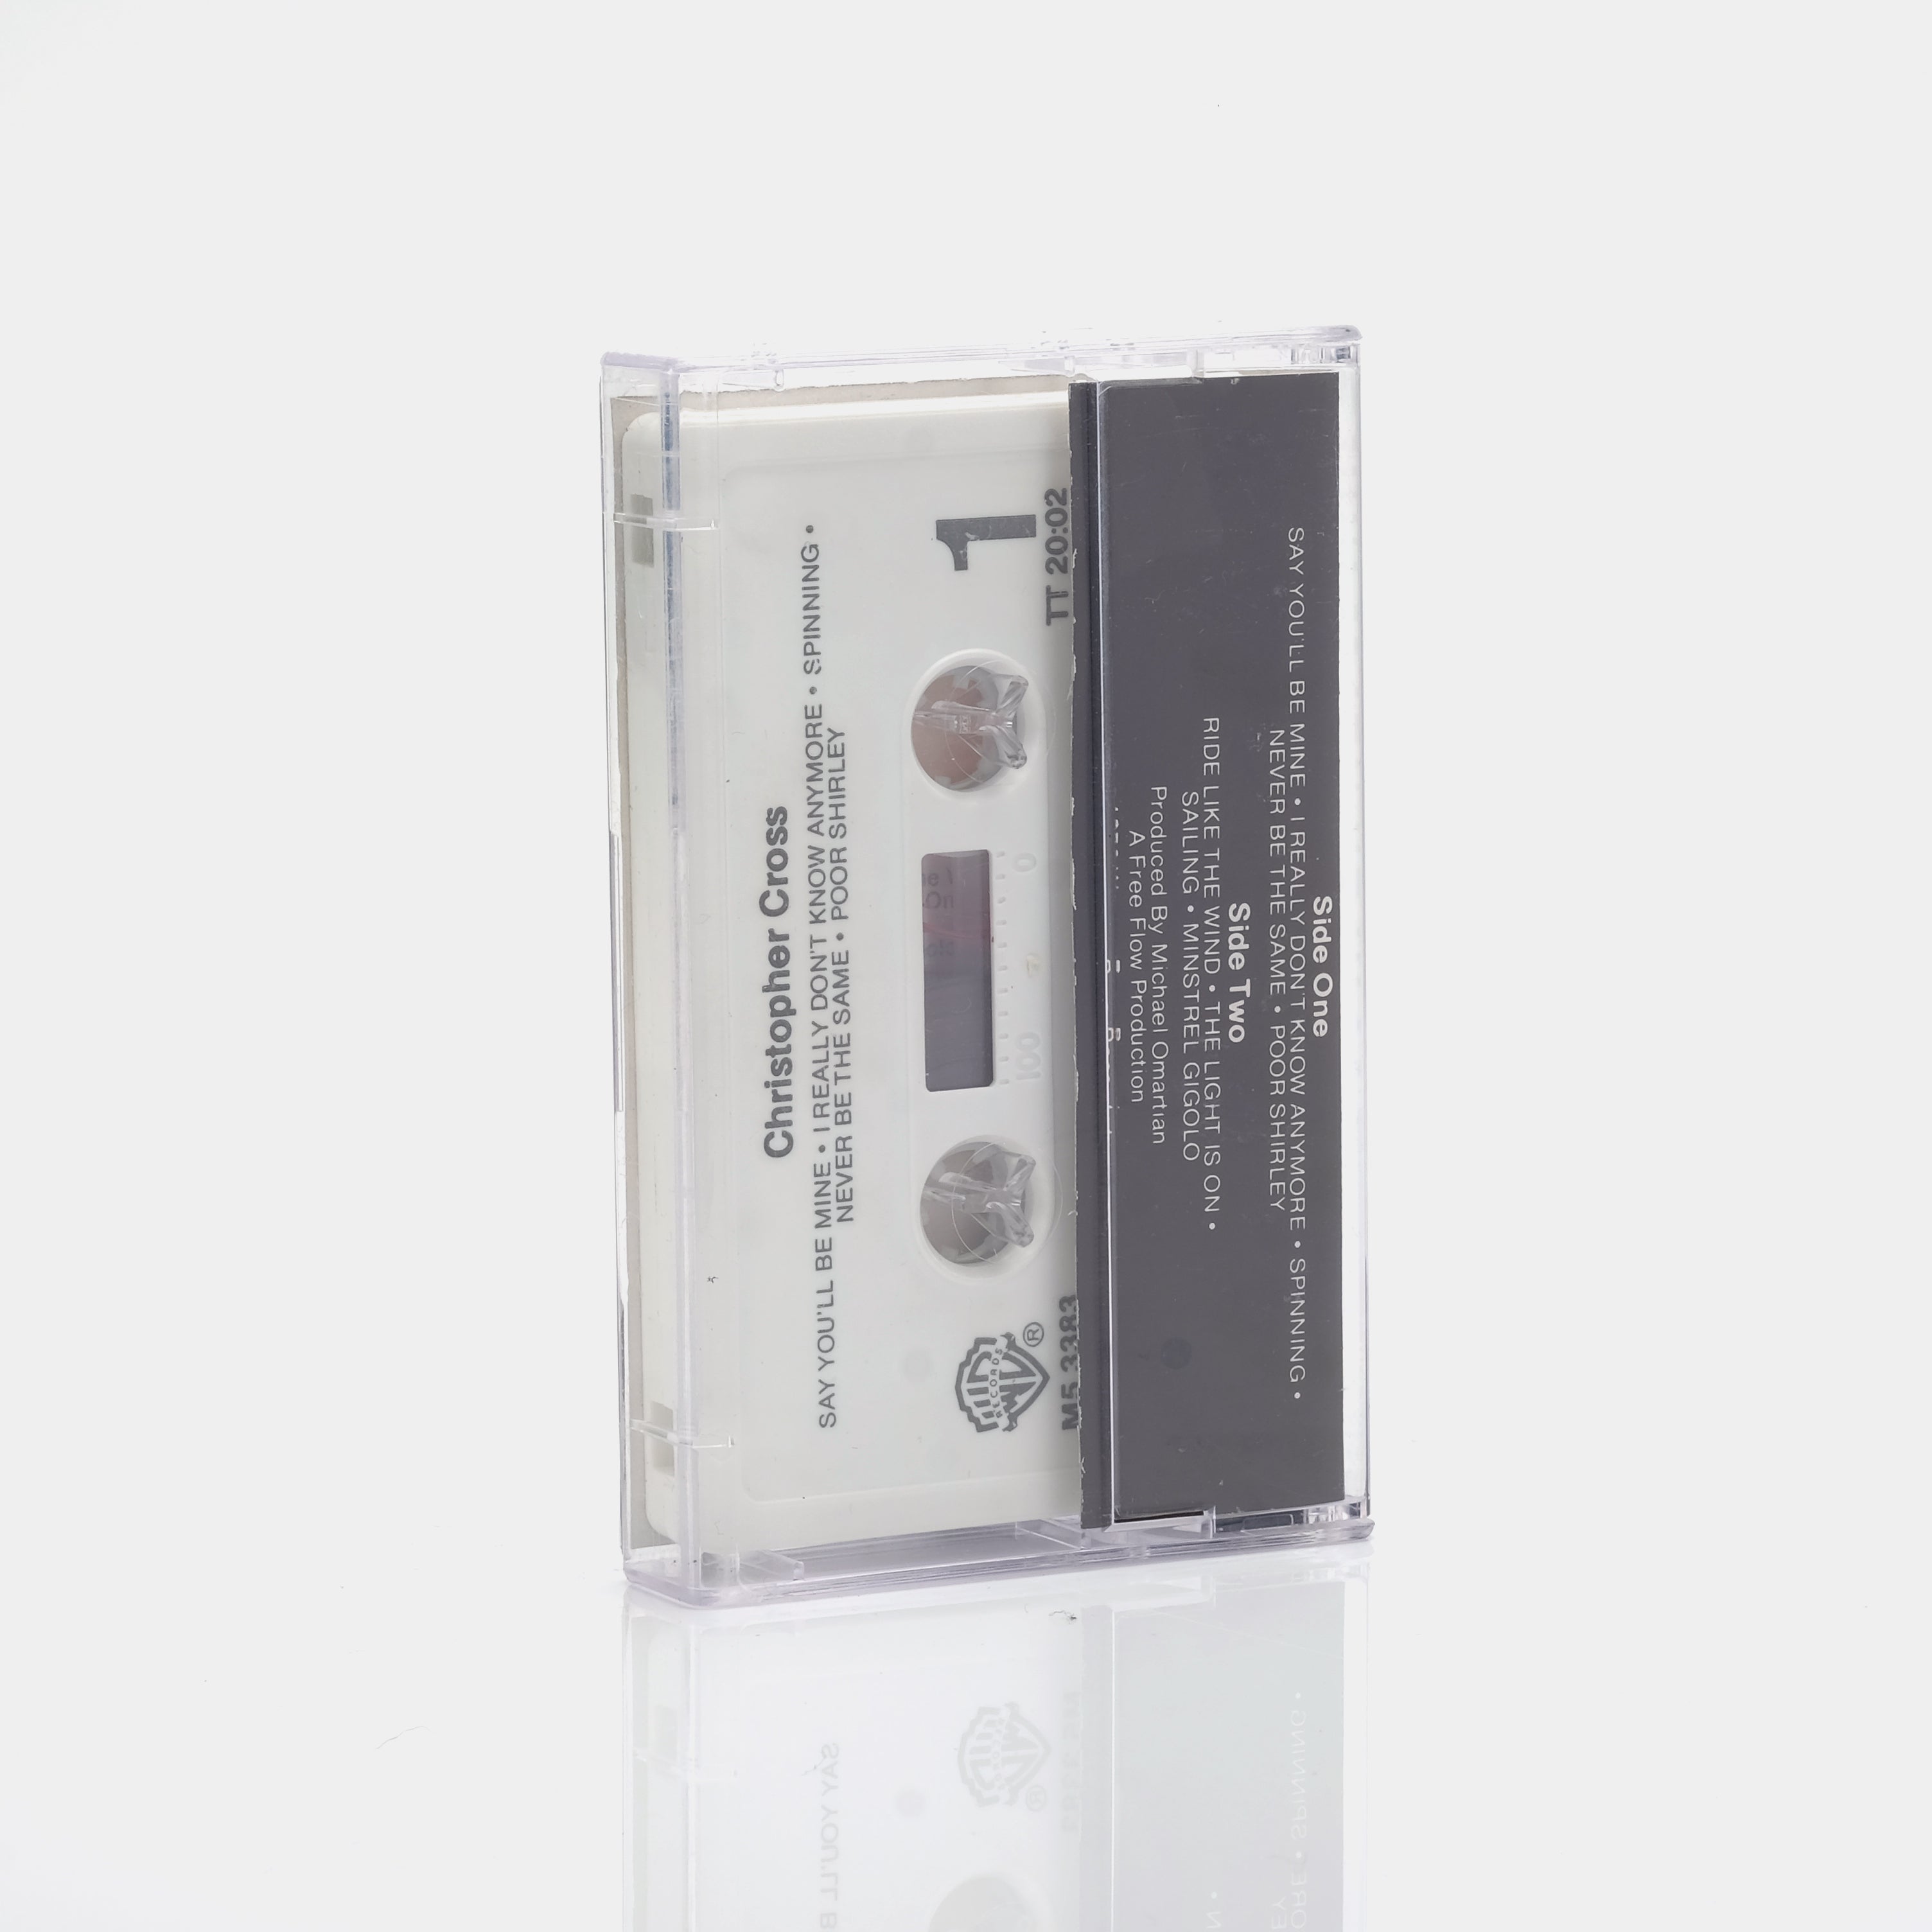 Christopher Cross - Christopher Cross Cassette Tape